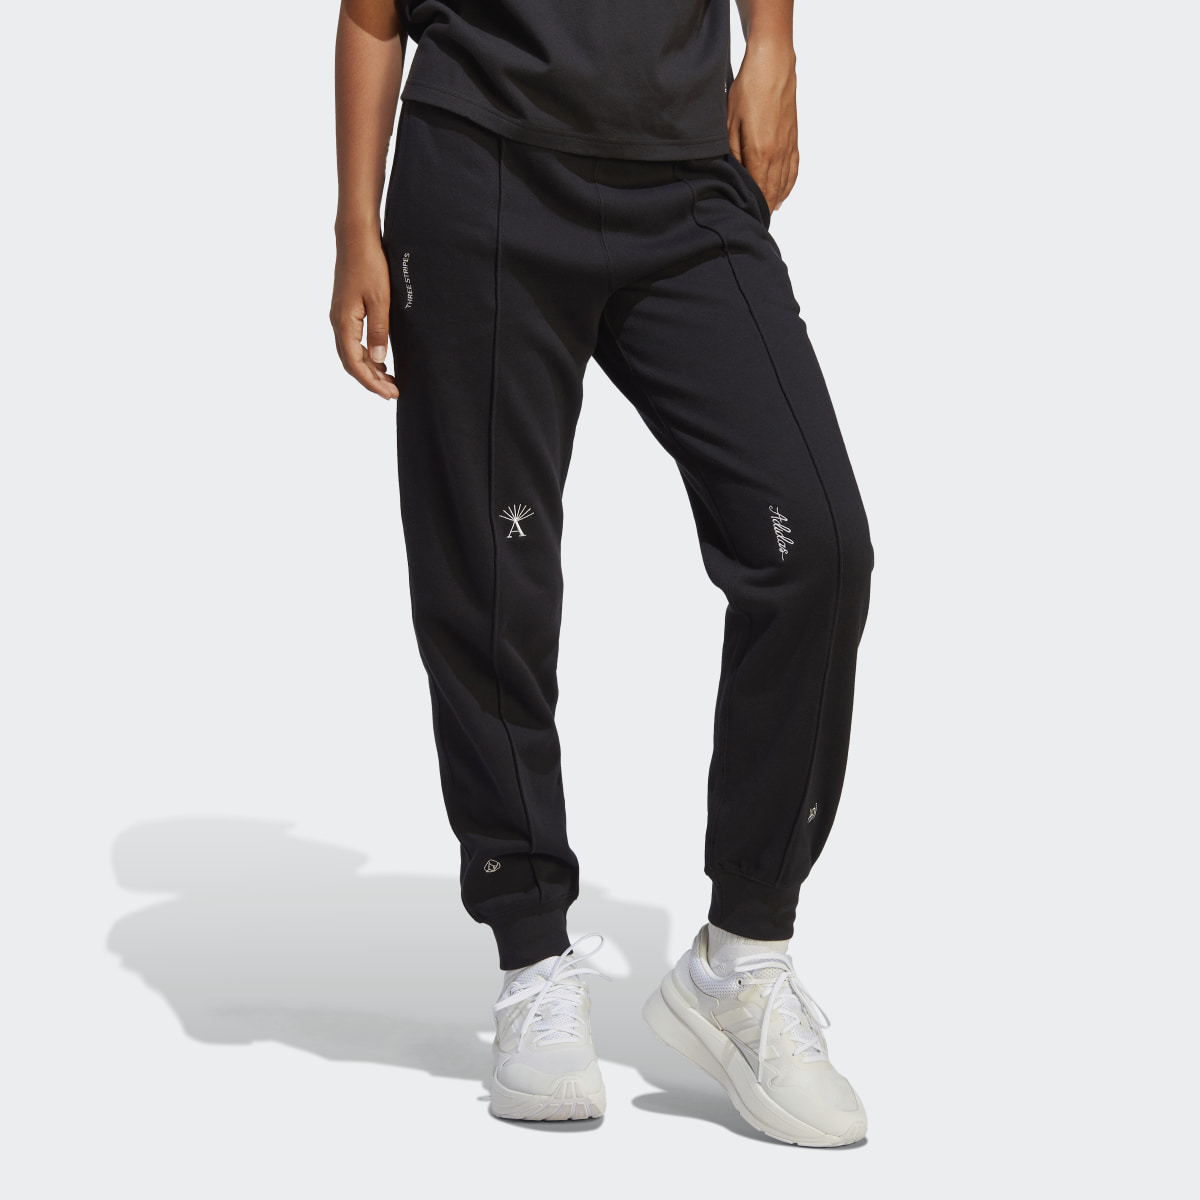 Adidas Pantalon sportswear avec graphismes inspirés de la lithothérapie. 4